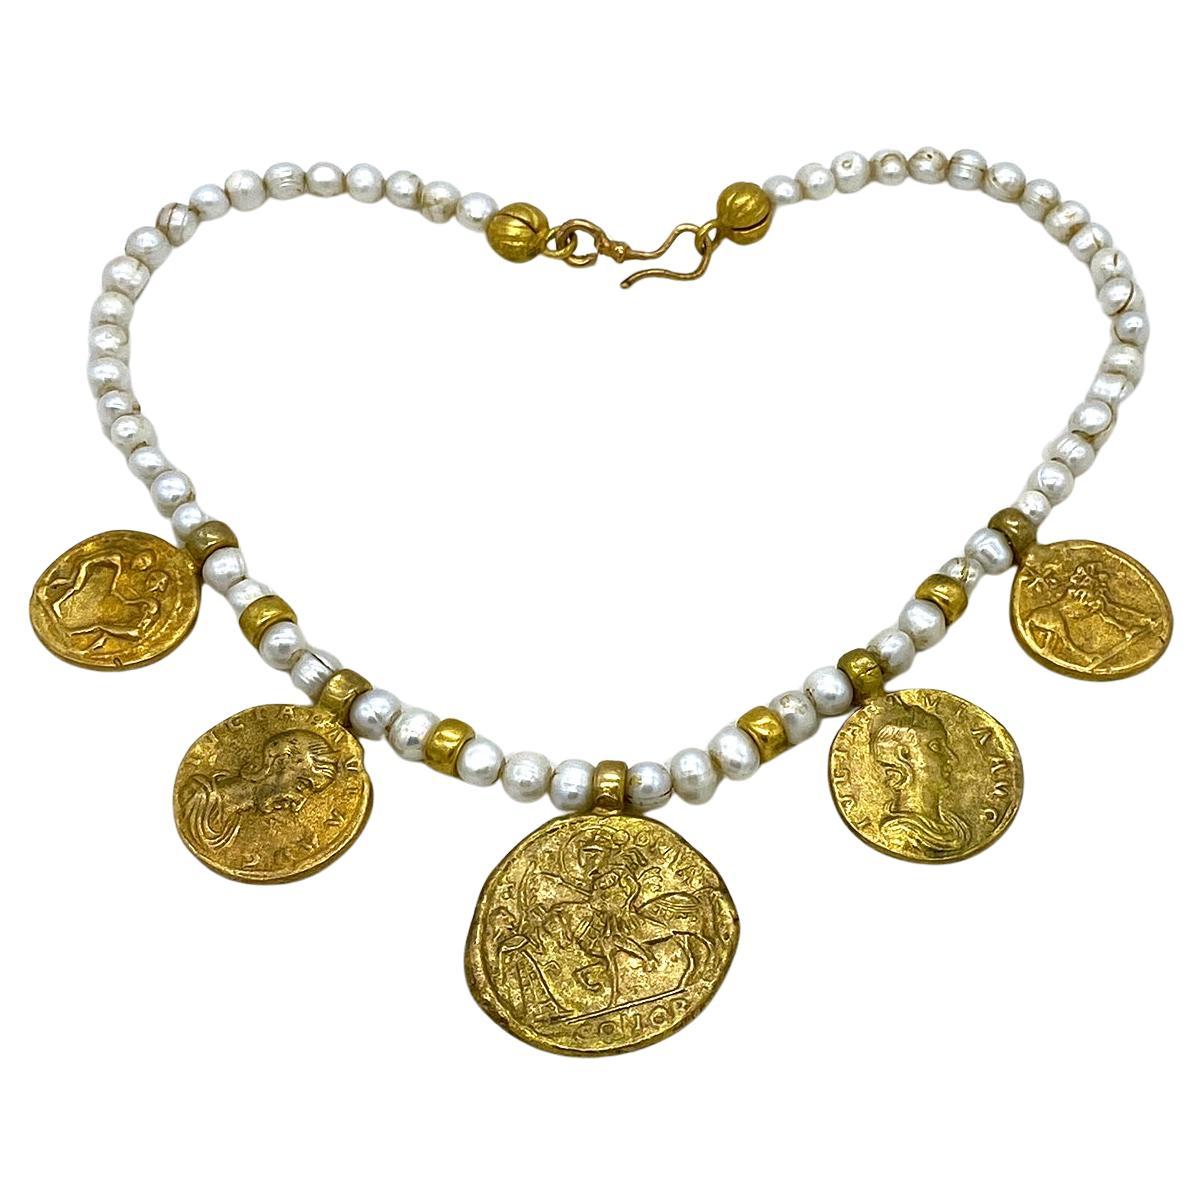 Il s'agit d'un collier de perles d'eau douce avec des charms en forme de pièces de monnaie romaines. Il est composé de perles baroques de 8 mm et d'éléments en bronze doré. Il y a cinq pièces de monnaie anciennes reproduites en dorure, de trois